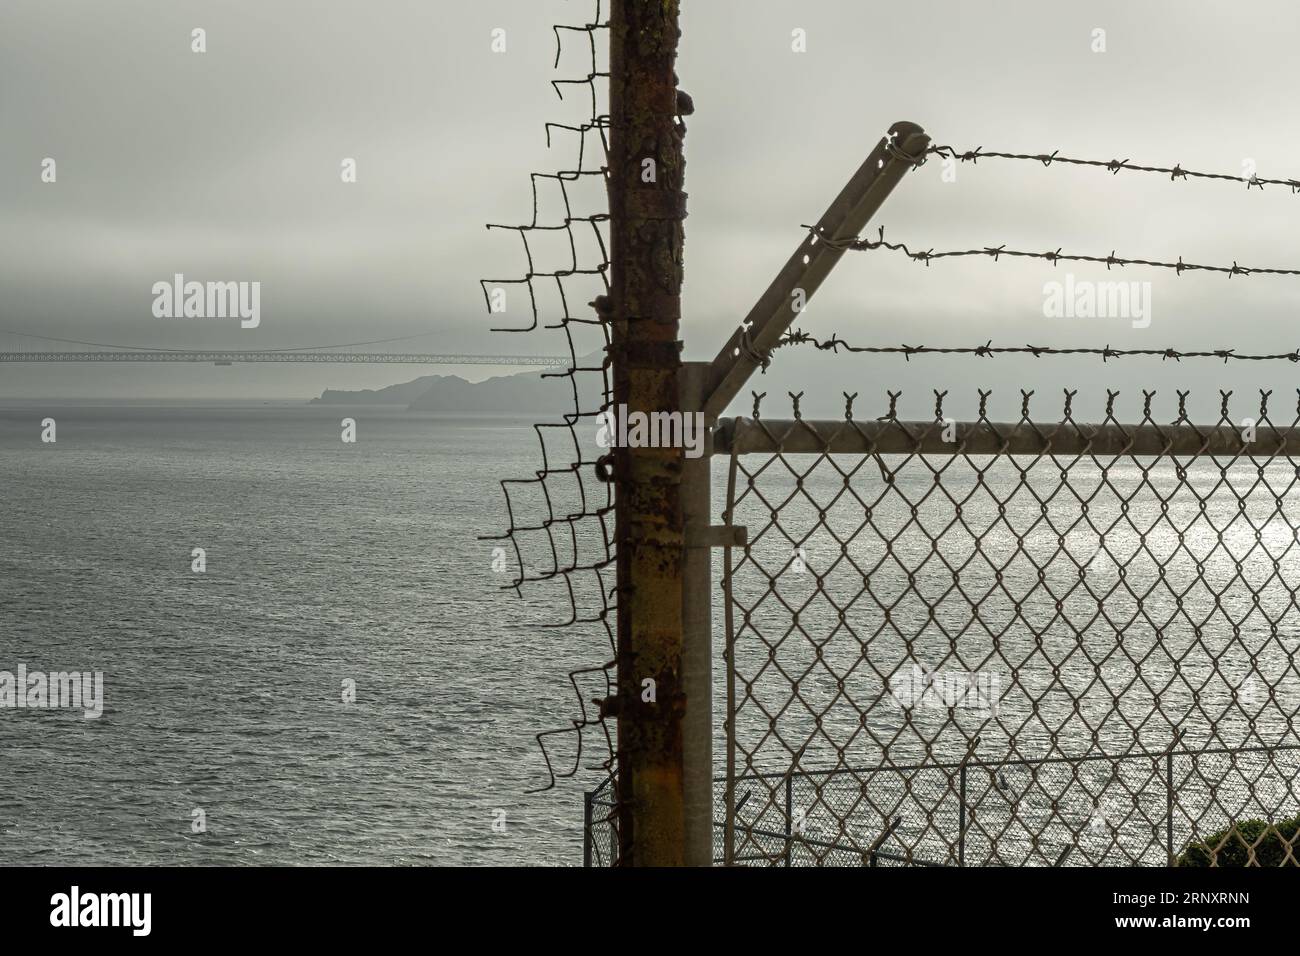 San Francisco, CA, USA - 12 juillet 2023 : à l'intérieur de la prison historique d'Alcatraz. Pont du Golden Gate sous un ciel brumeux de fin de journée derrière des barbelés Banque D'Images